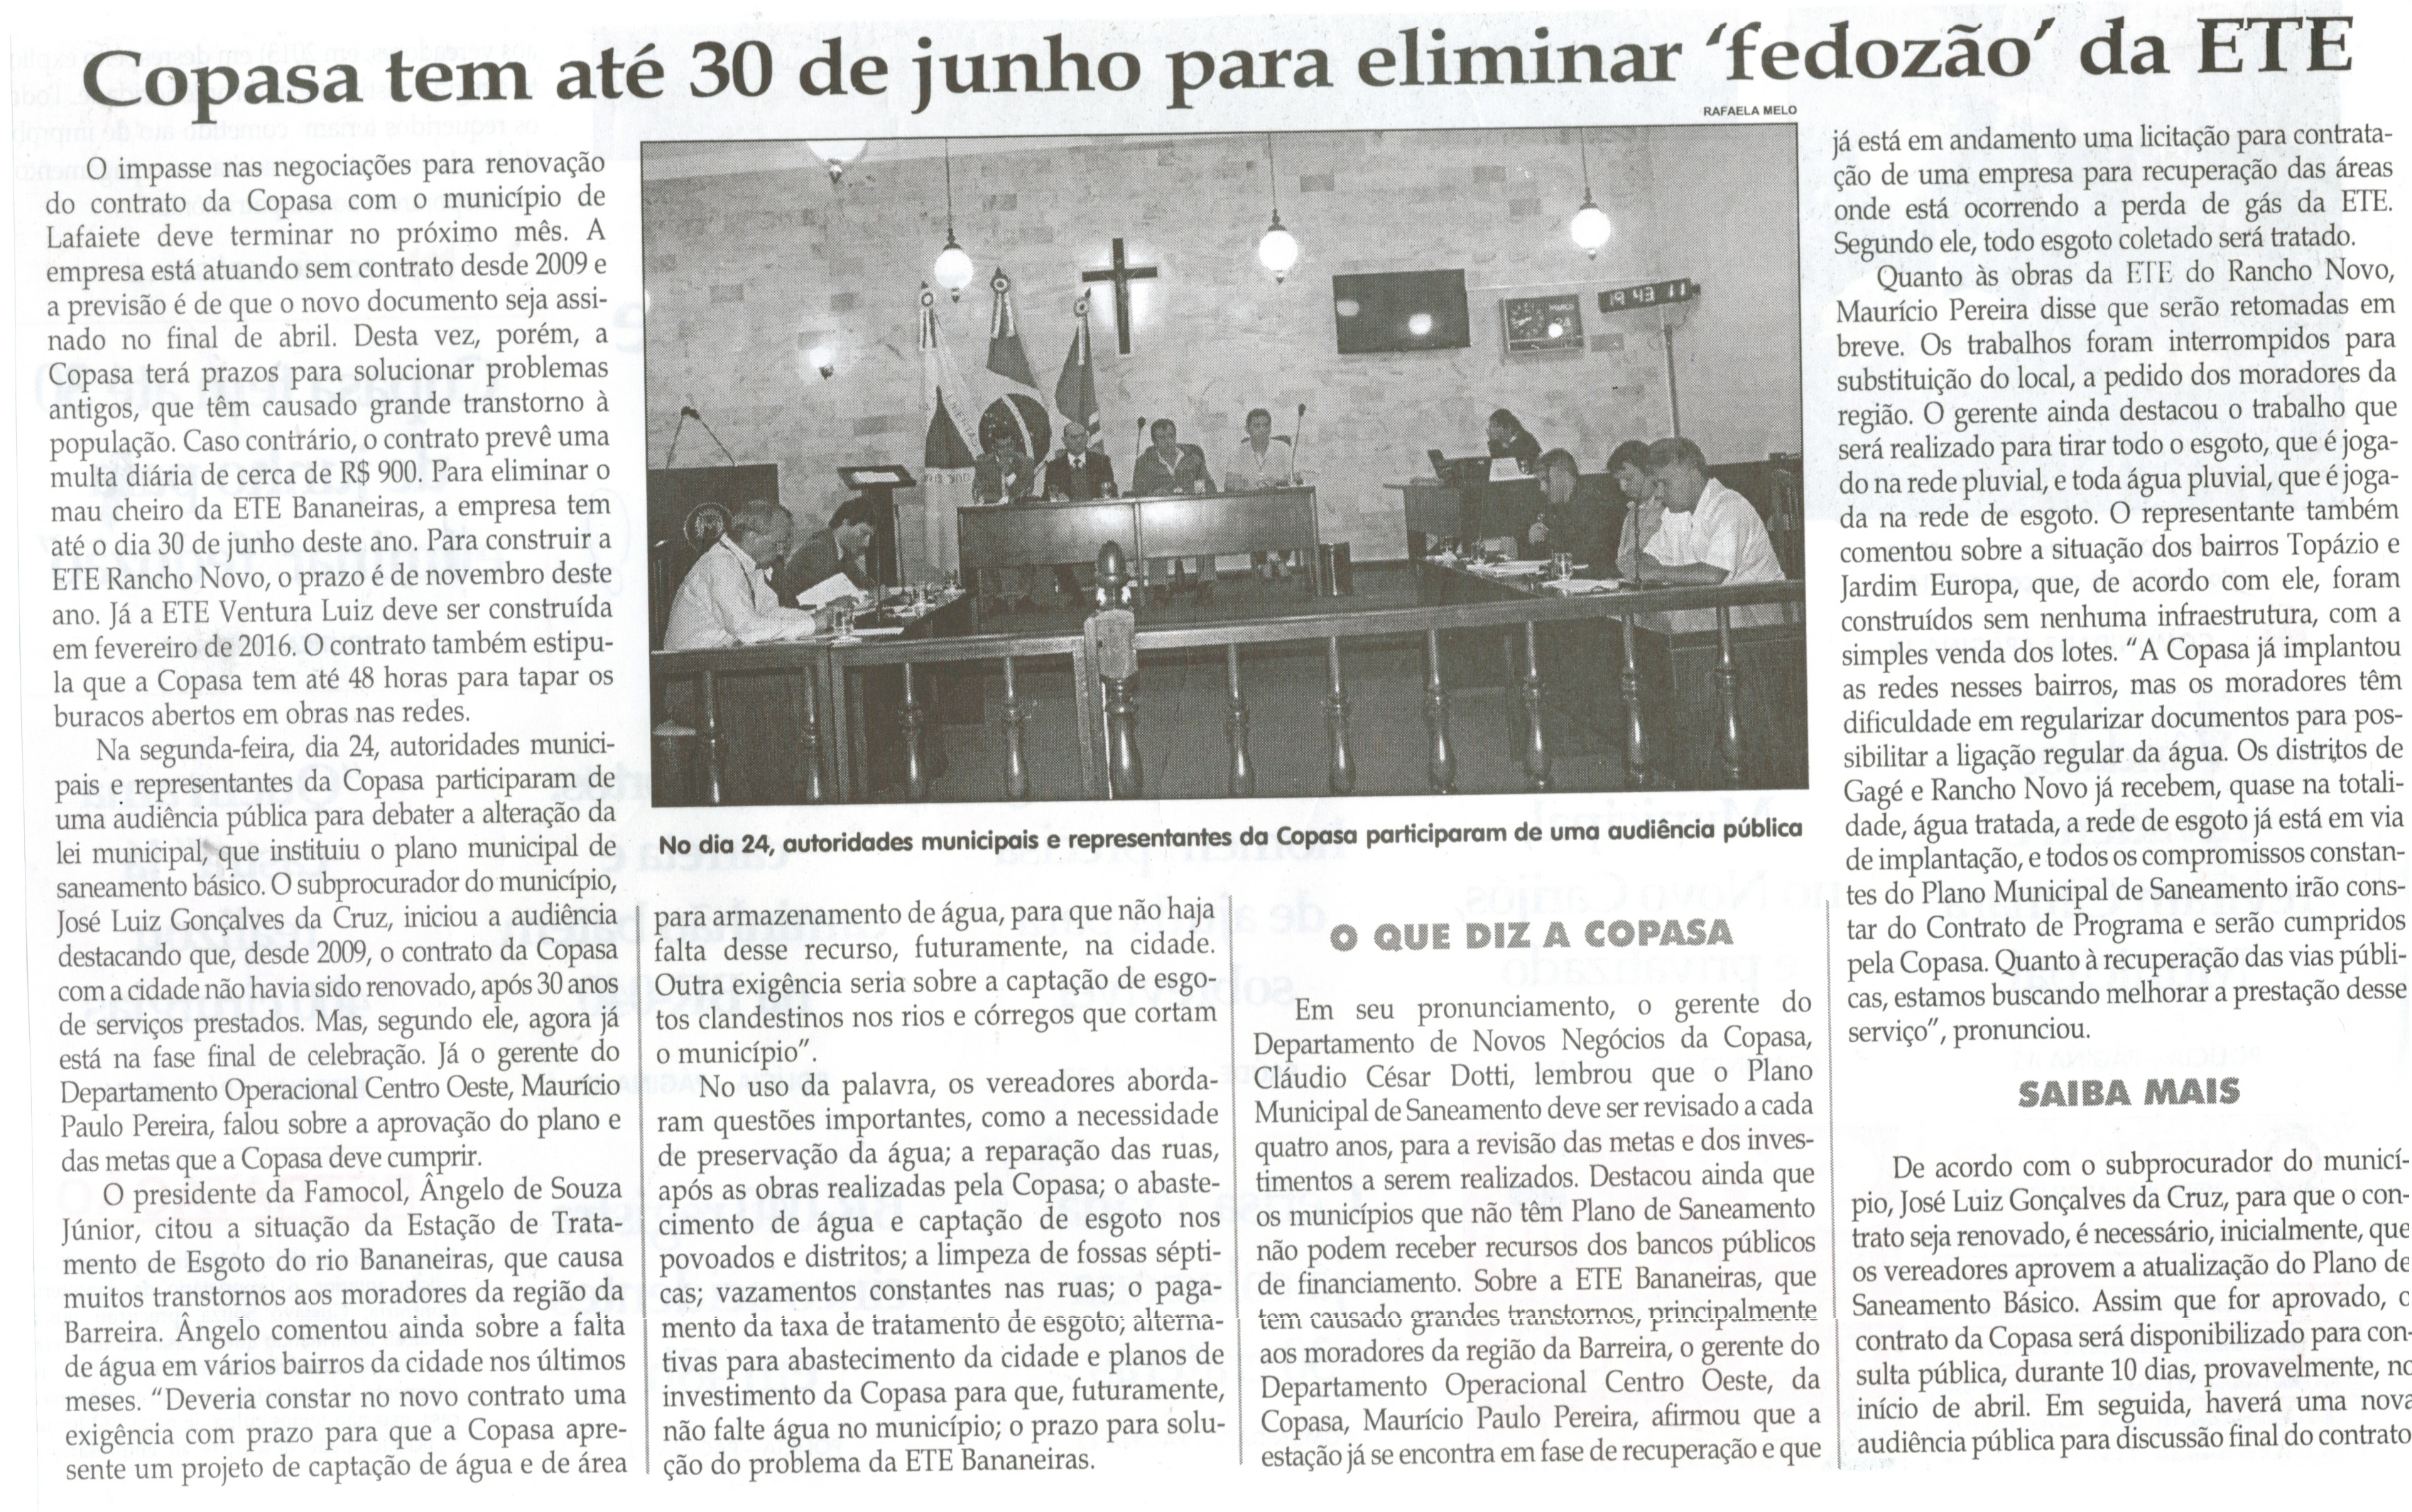 Copasa tem até 30 de junho para eliminar "fedozão" da ETE. Jornal Correio da Cidade, Conselheiro Lafaiete, 04 mar. 2014, p. 2.